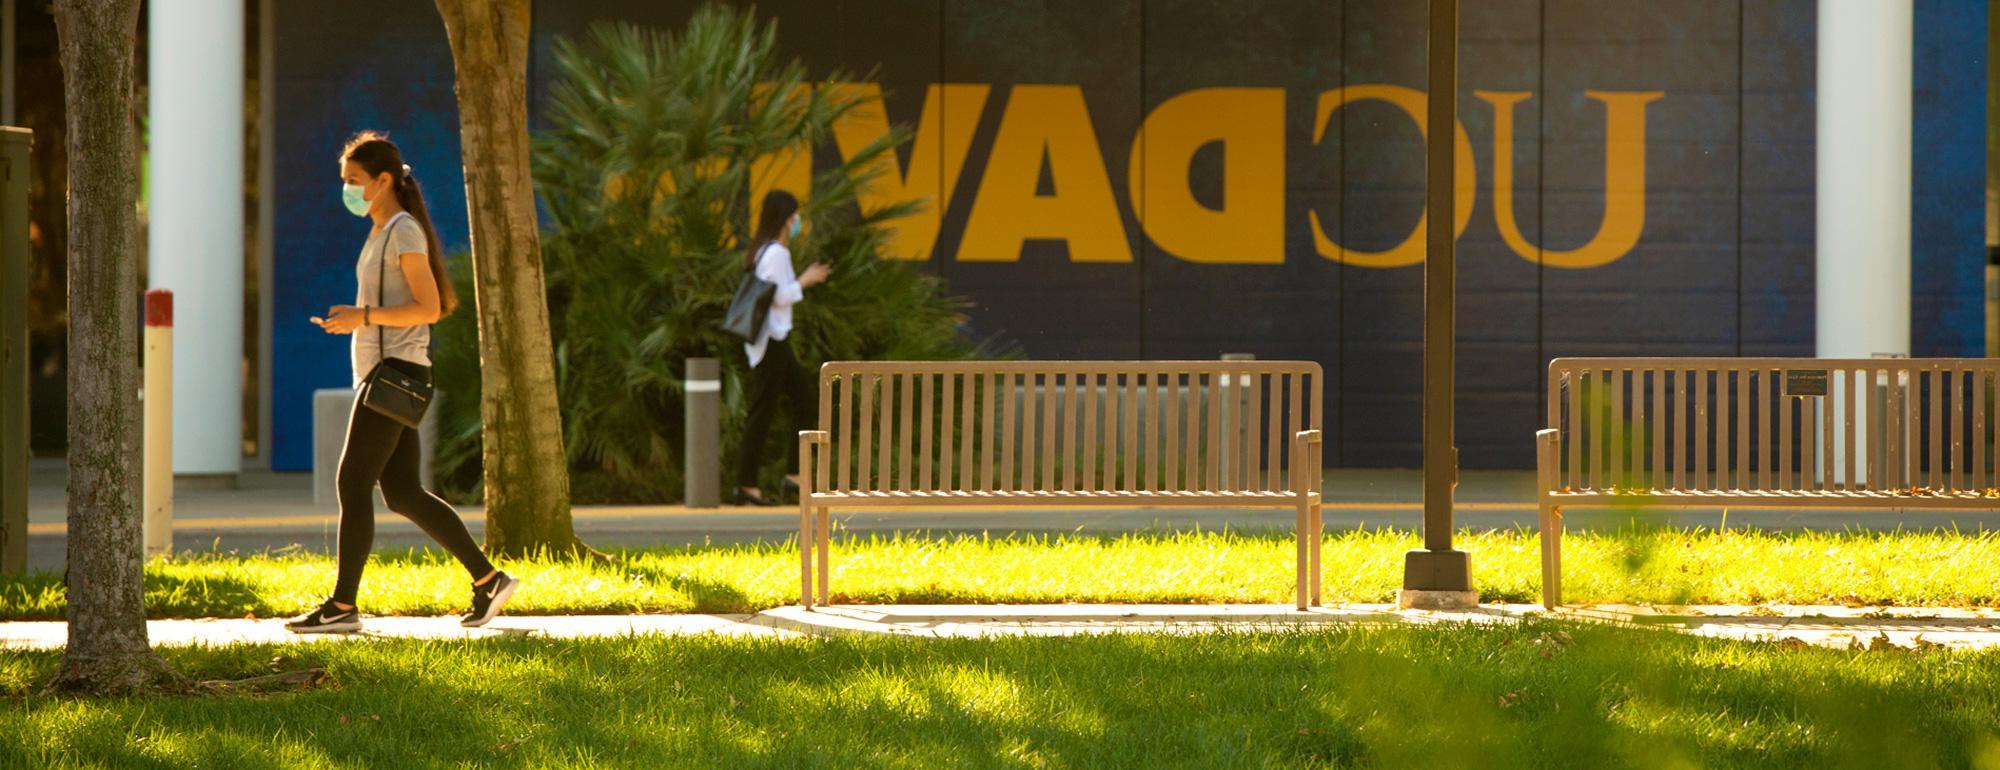 一个学生走在校园里. 一个巨大的amjs澳金沙门的标志在建筑的背景墙上.